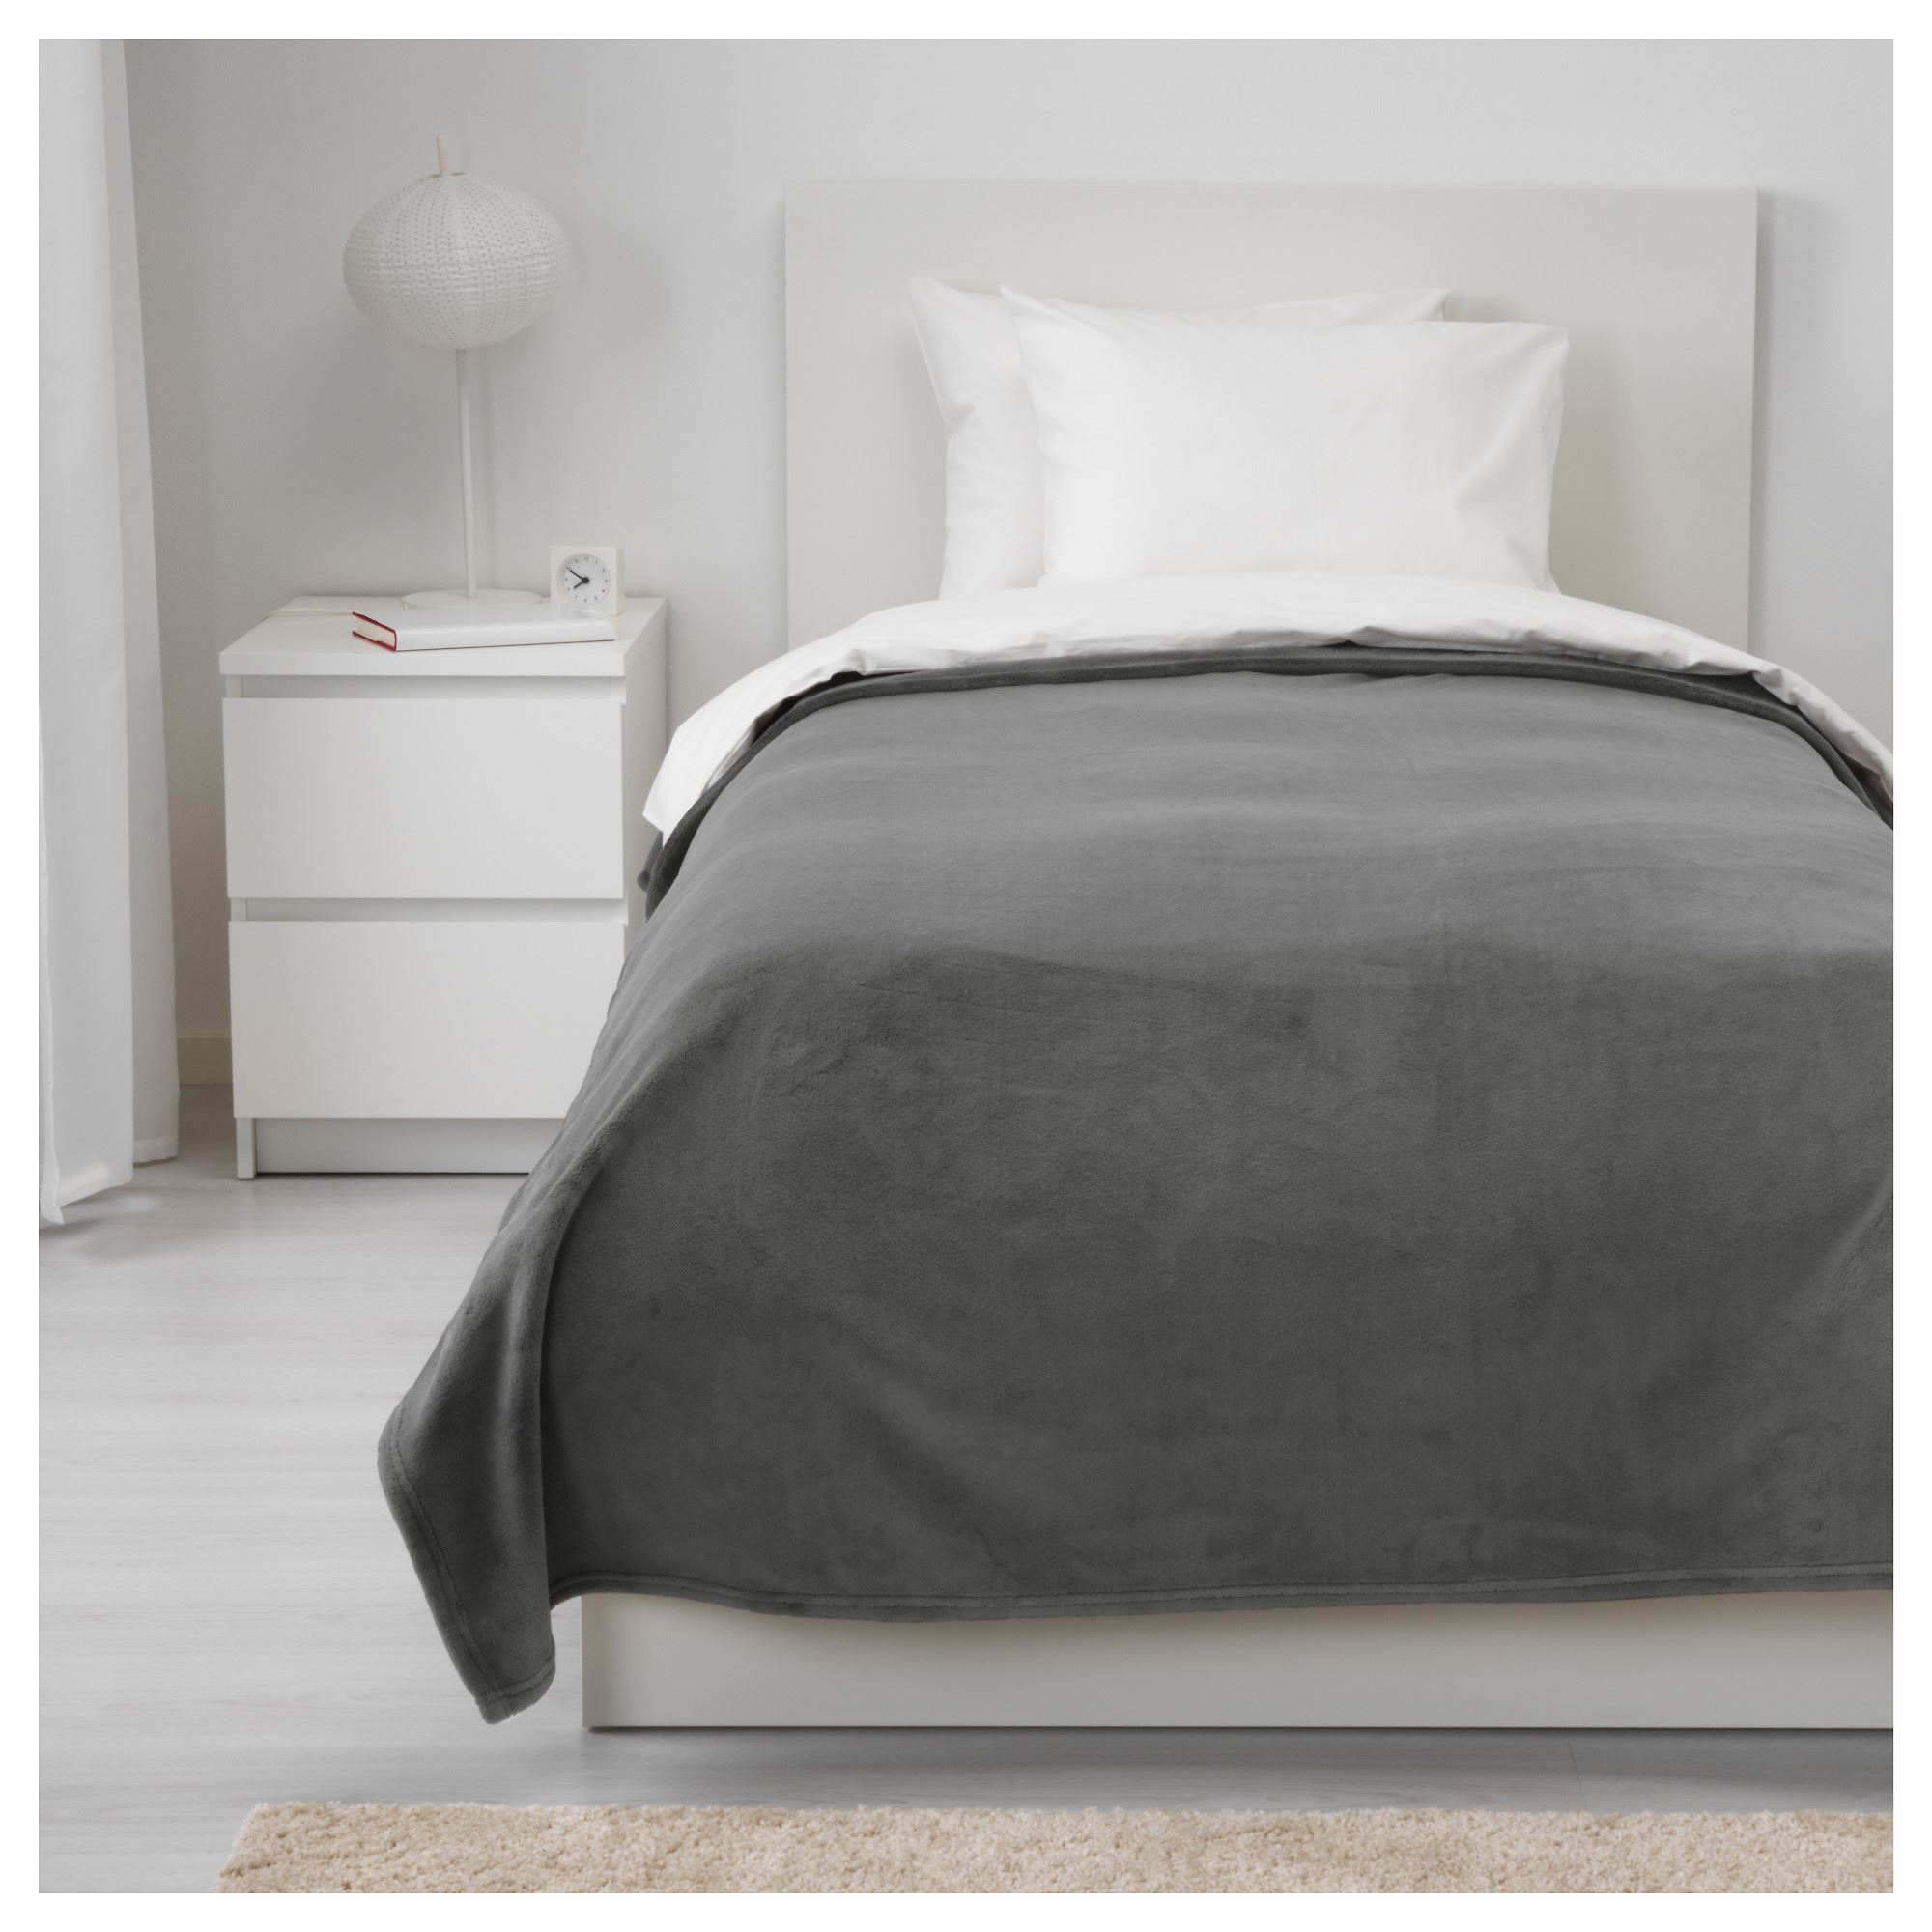 TRATTVIVA tek kişilik yatak örtüsü, gri, 150x250 cm